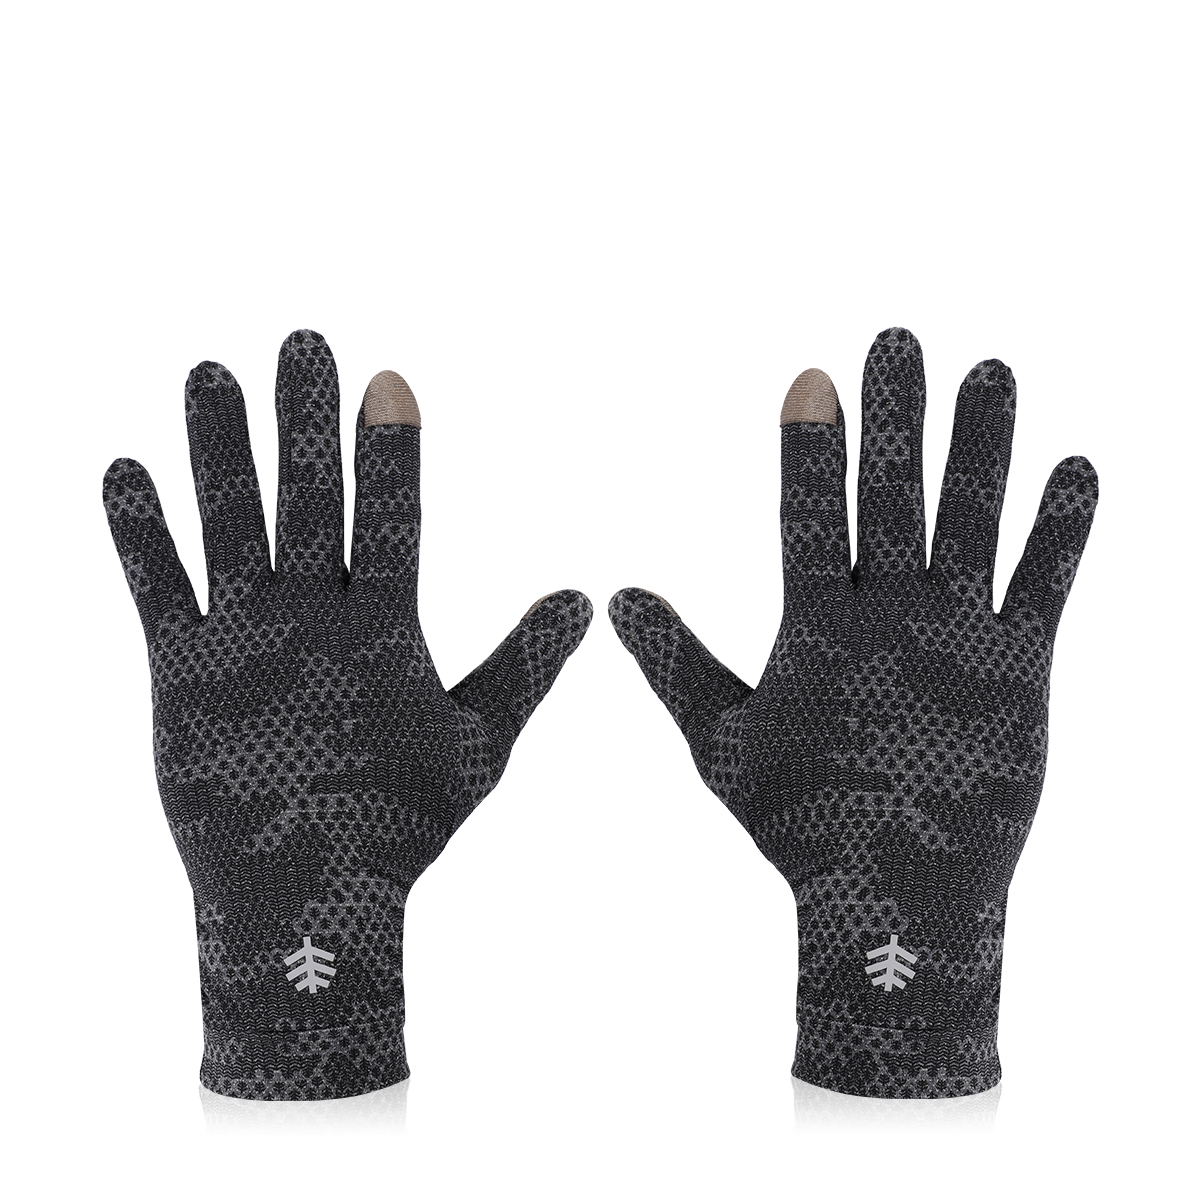 Buy Gannett UV Sun Protective Gloves - Charcoal Camo Online in